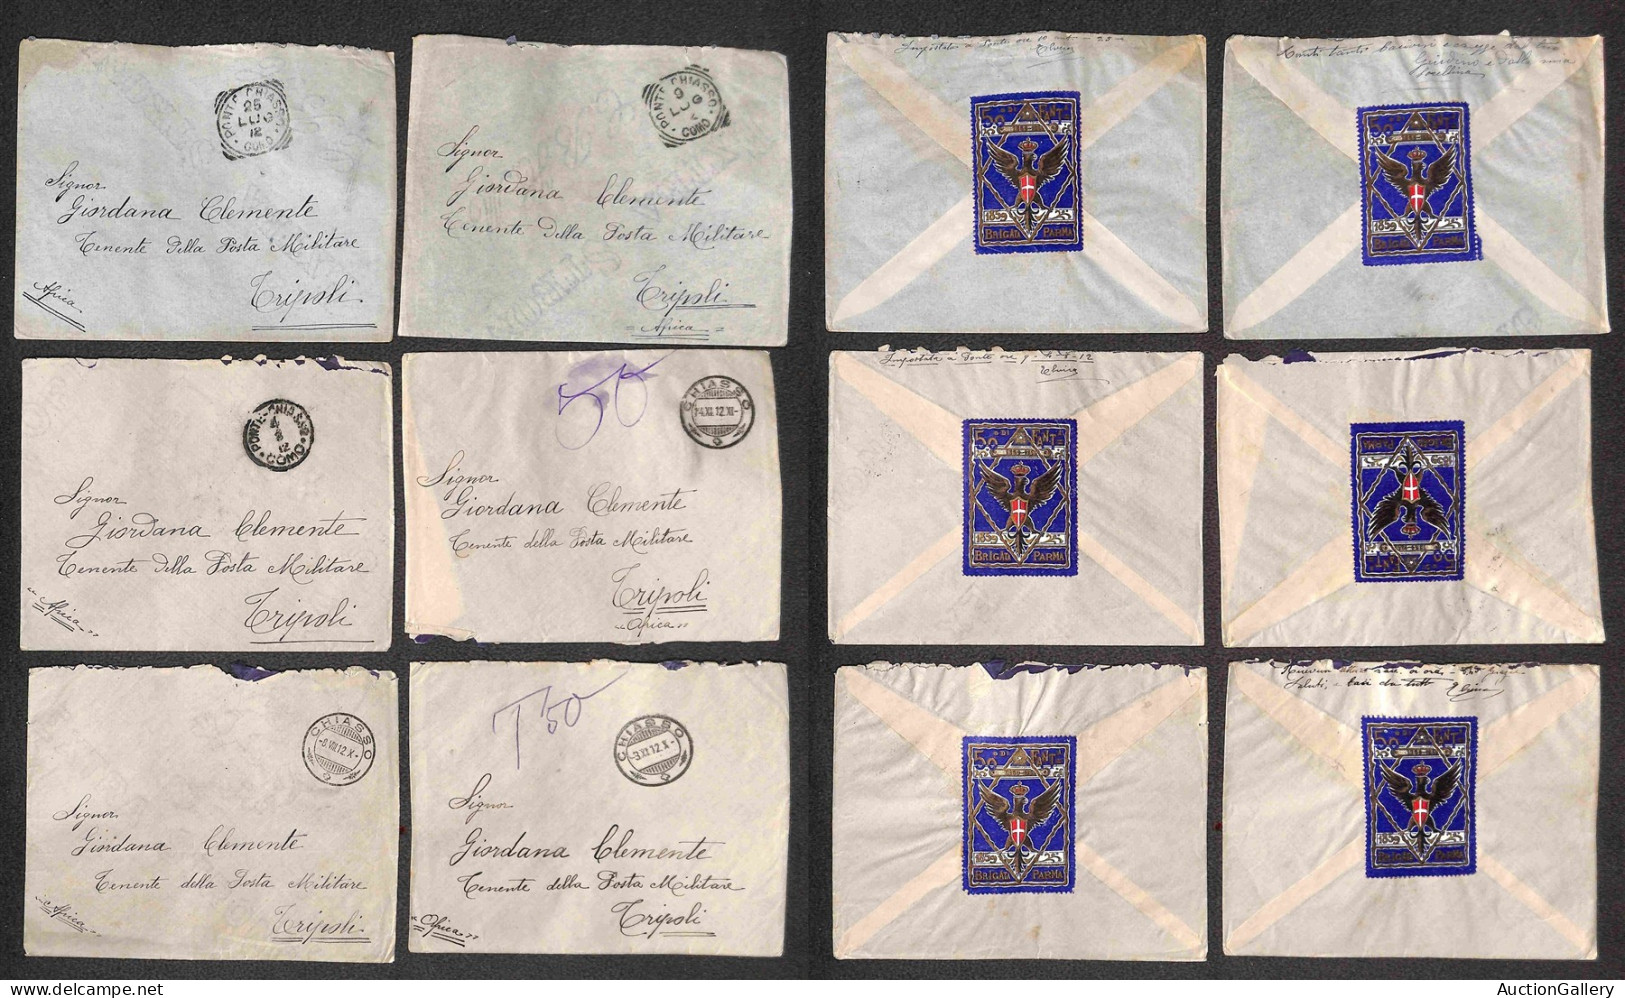 Colonie - Libia - 1912/1915 - Costanzo/Giordana - insieme di buste e cartoline della corrispondenza (anche in franchigia